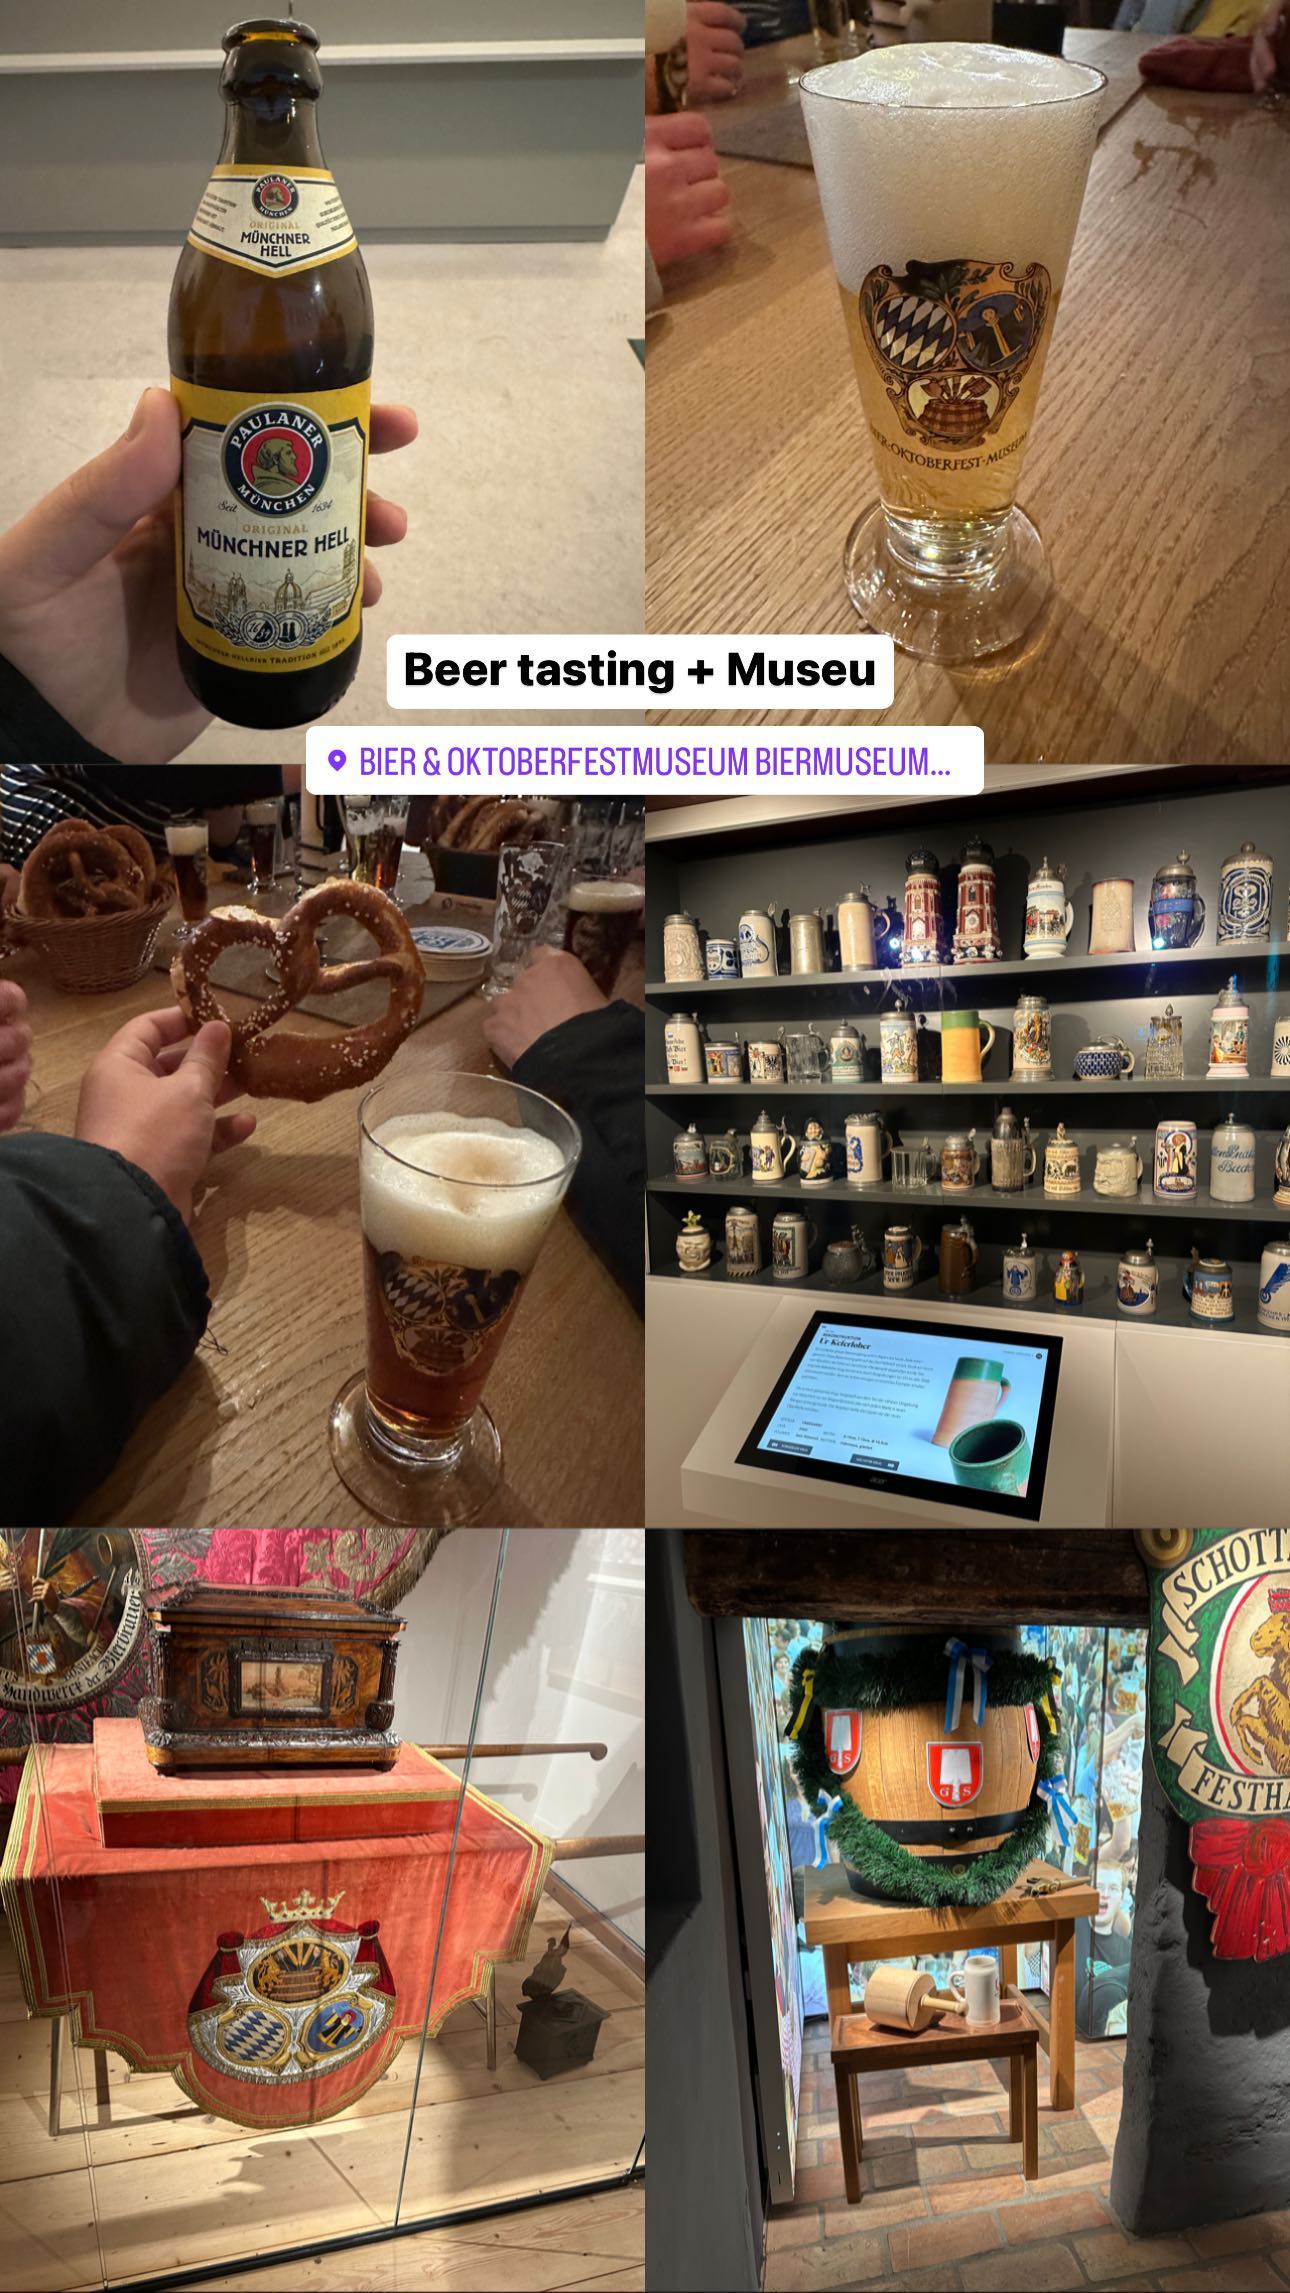 Beer tasting + Museum